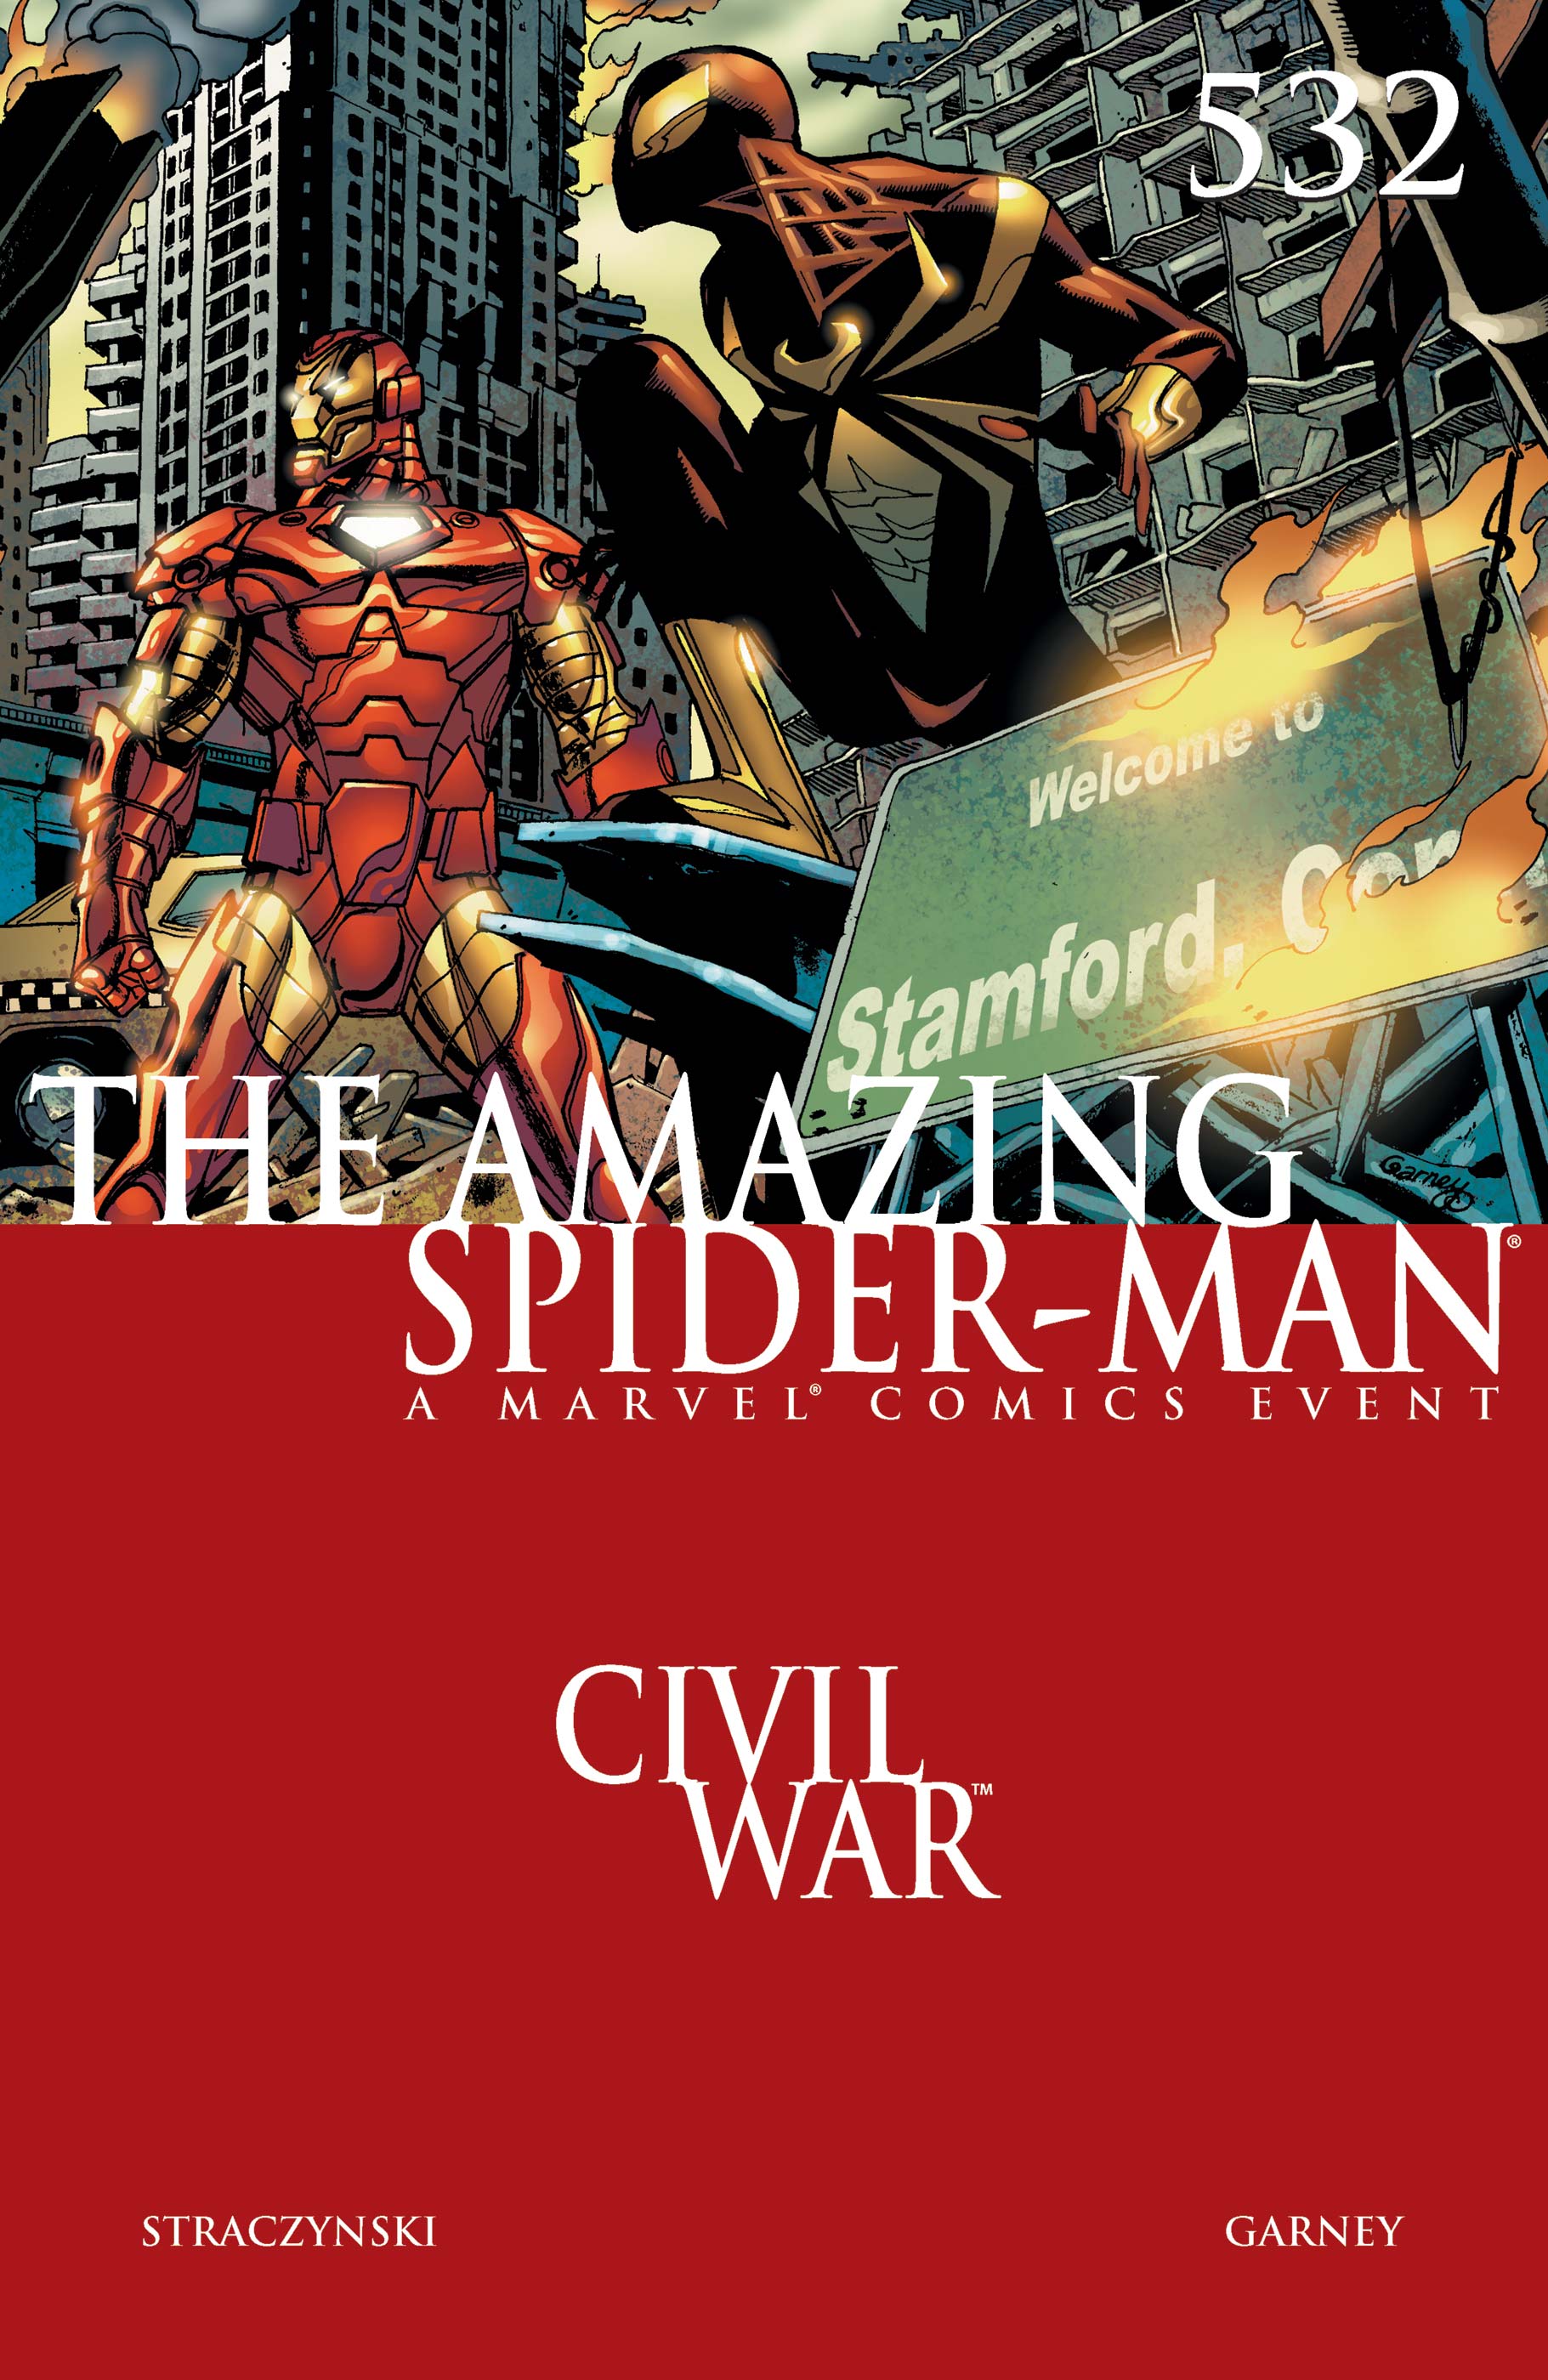 Amazing Spider-Man (1999) #532